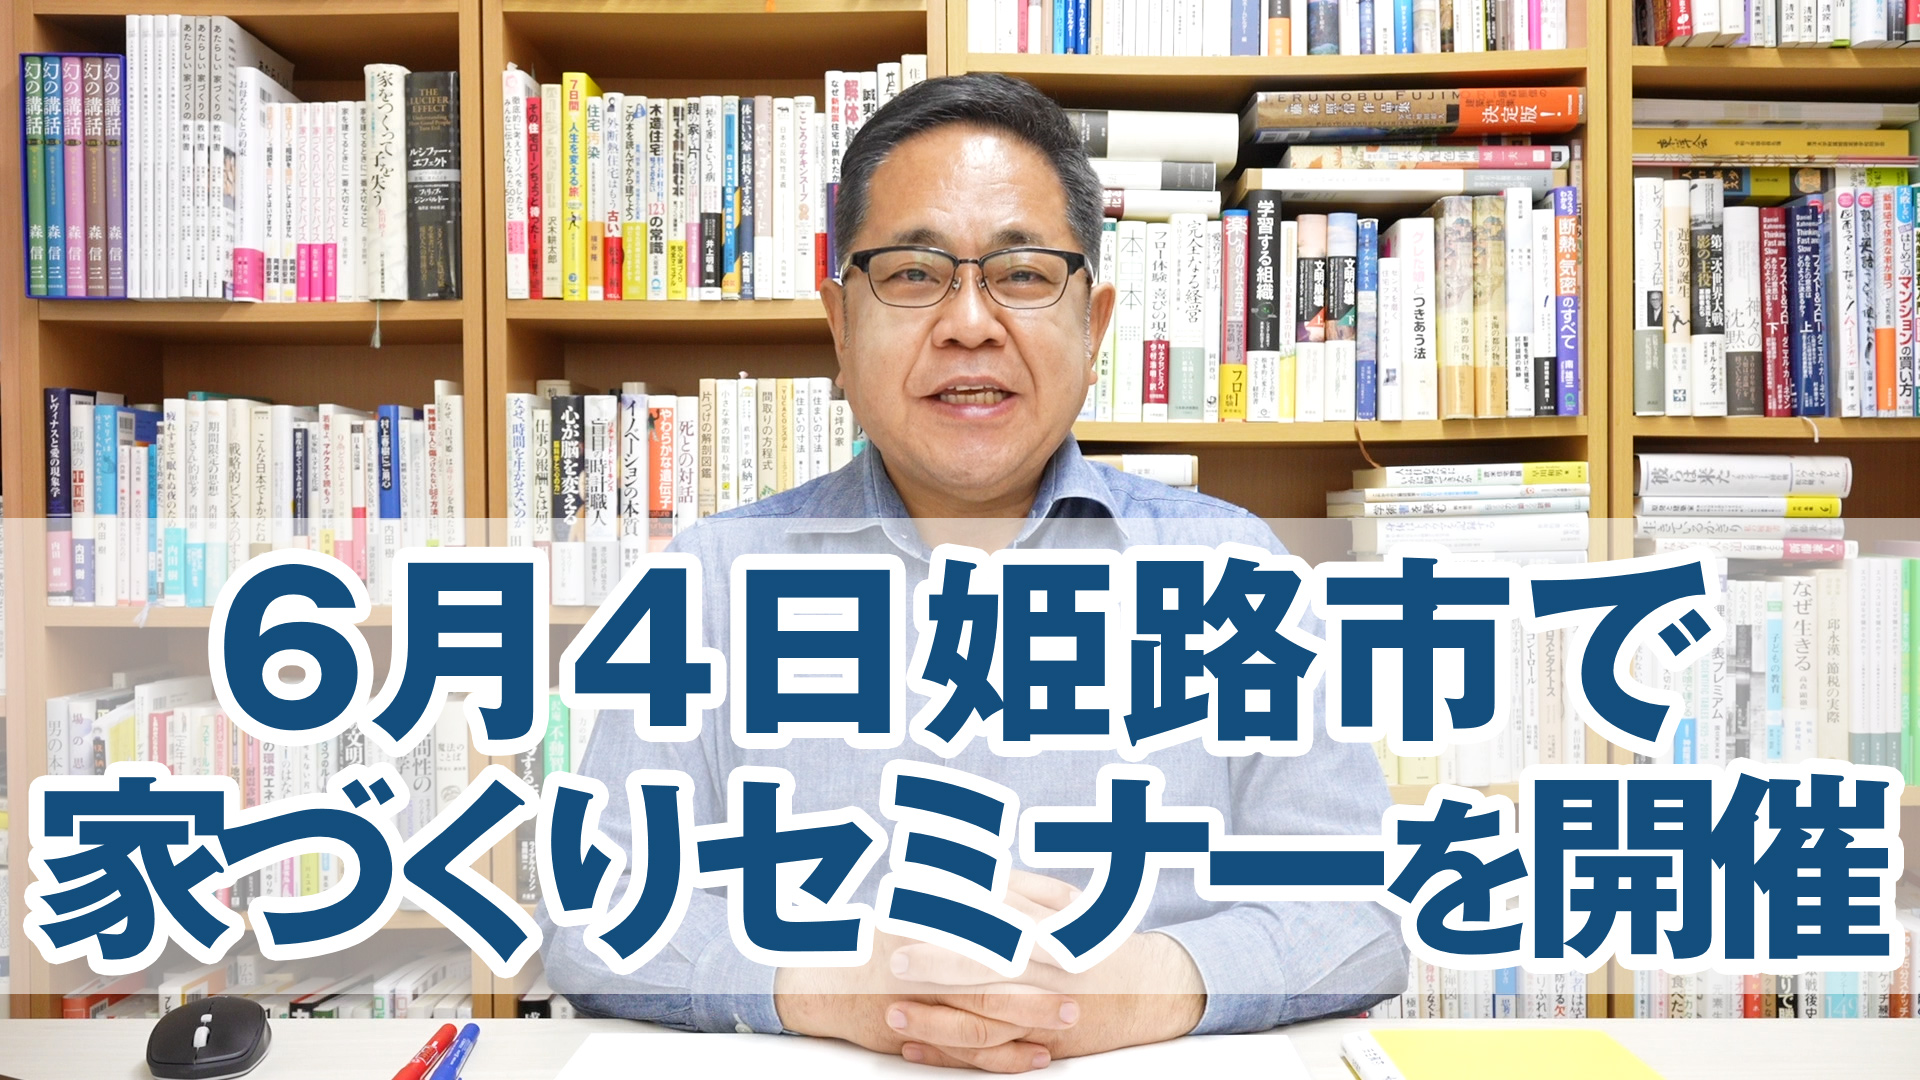 6月4日姫路市で松尾和也先生講演「間取りと住まい方の科学」家づくりセミナーを開催します